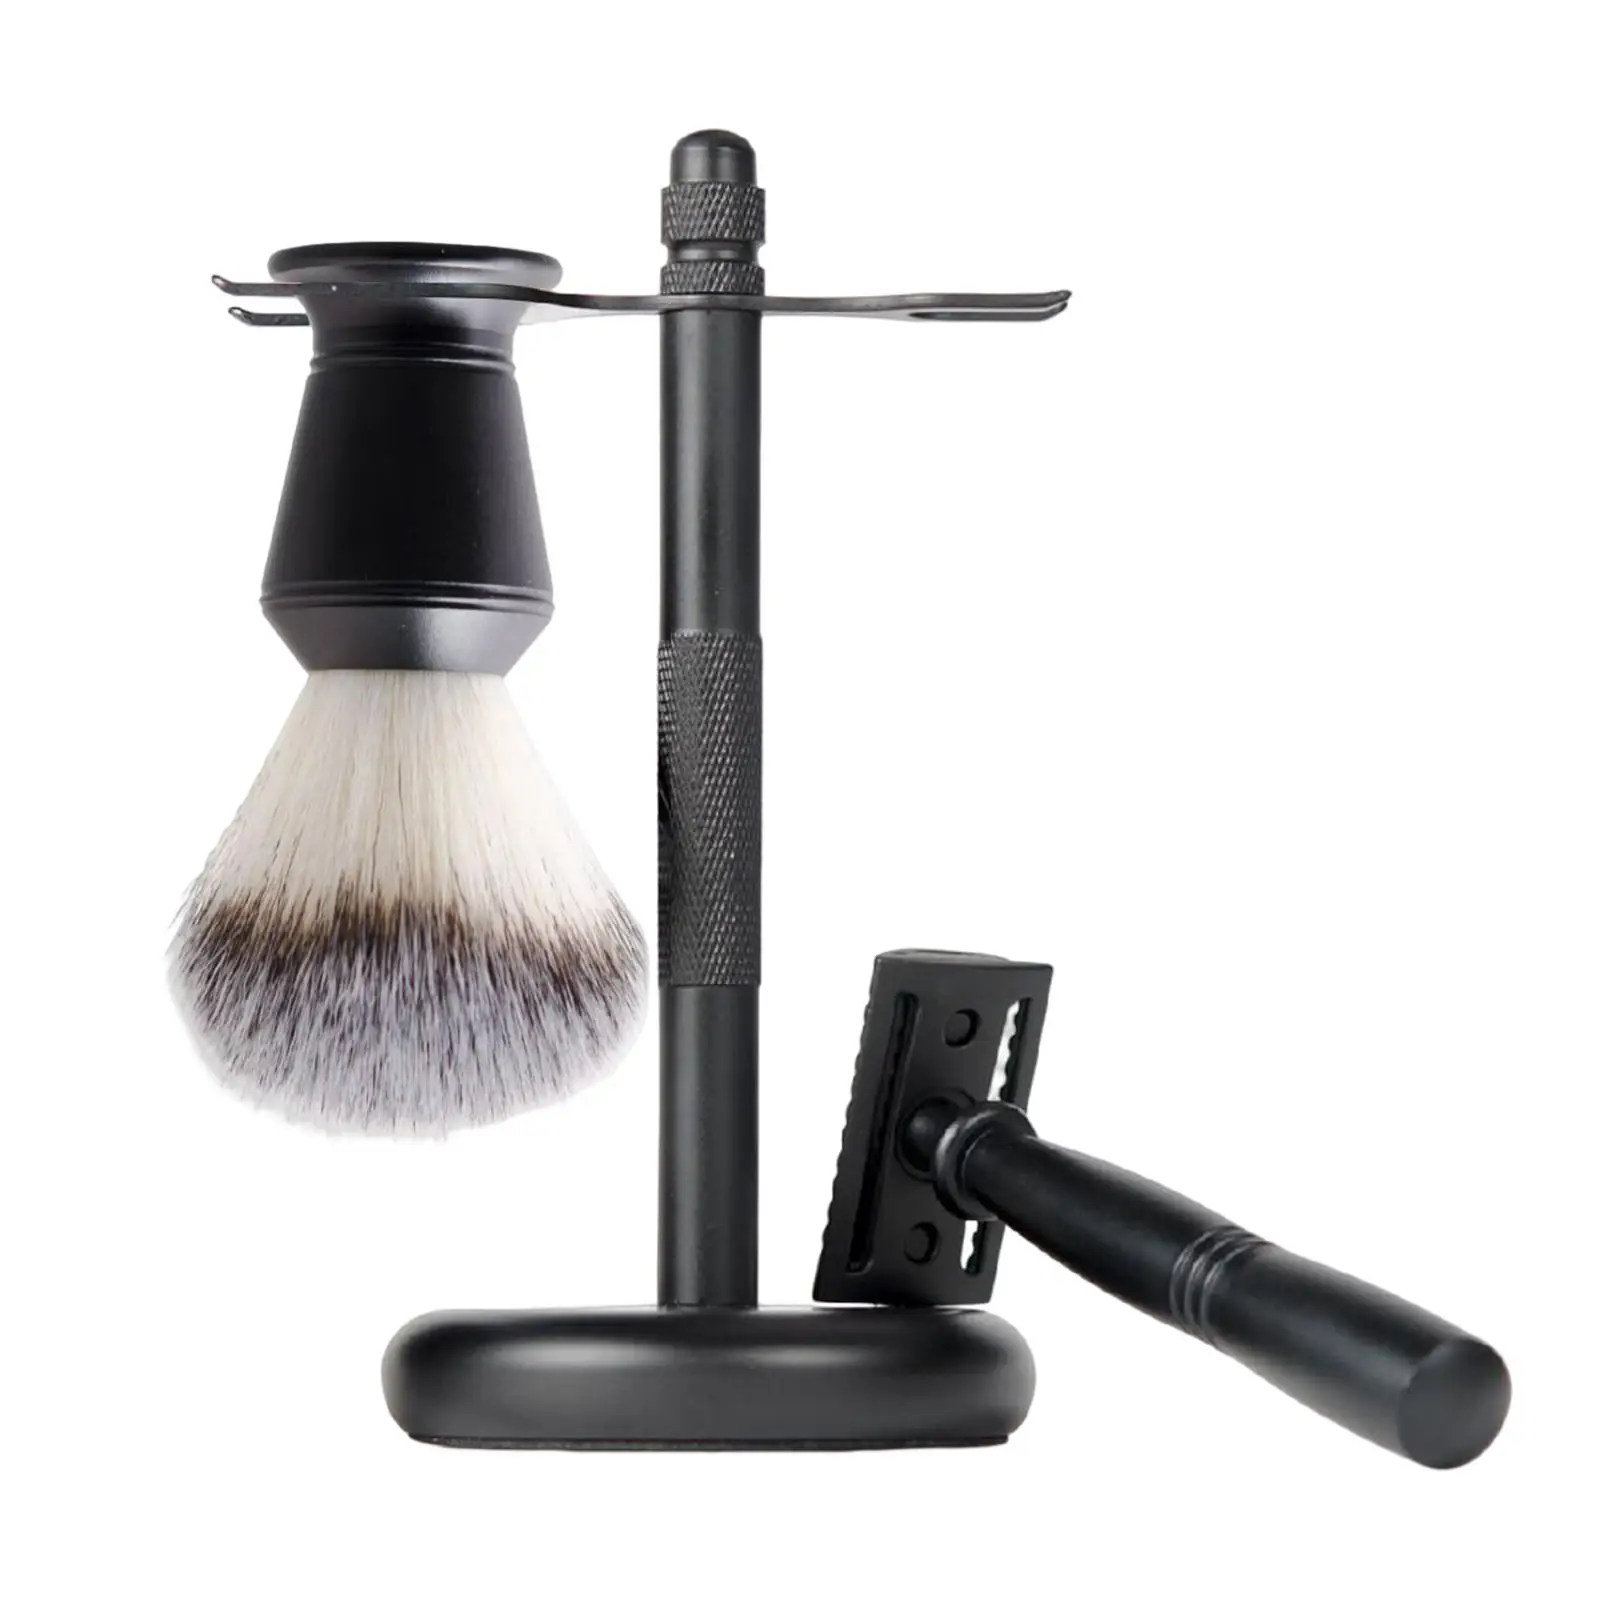 3Pcs Mens Shaving Kit Black Color Shaving Cleaning Tool Razor+ Stand Holder + Shaving Brush for Men Dad Boyfriend Husband Luxury